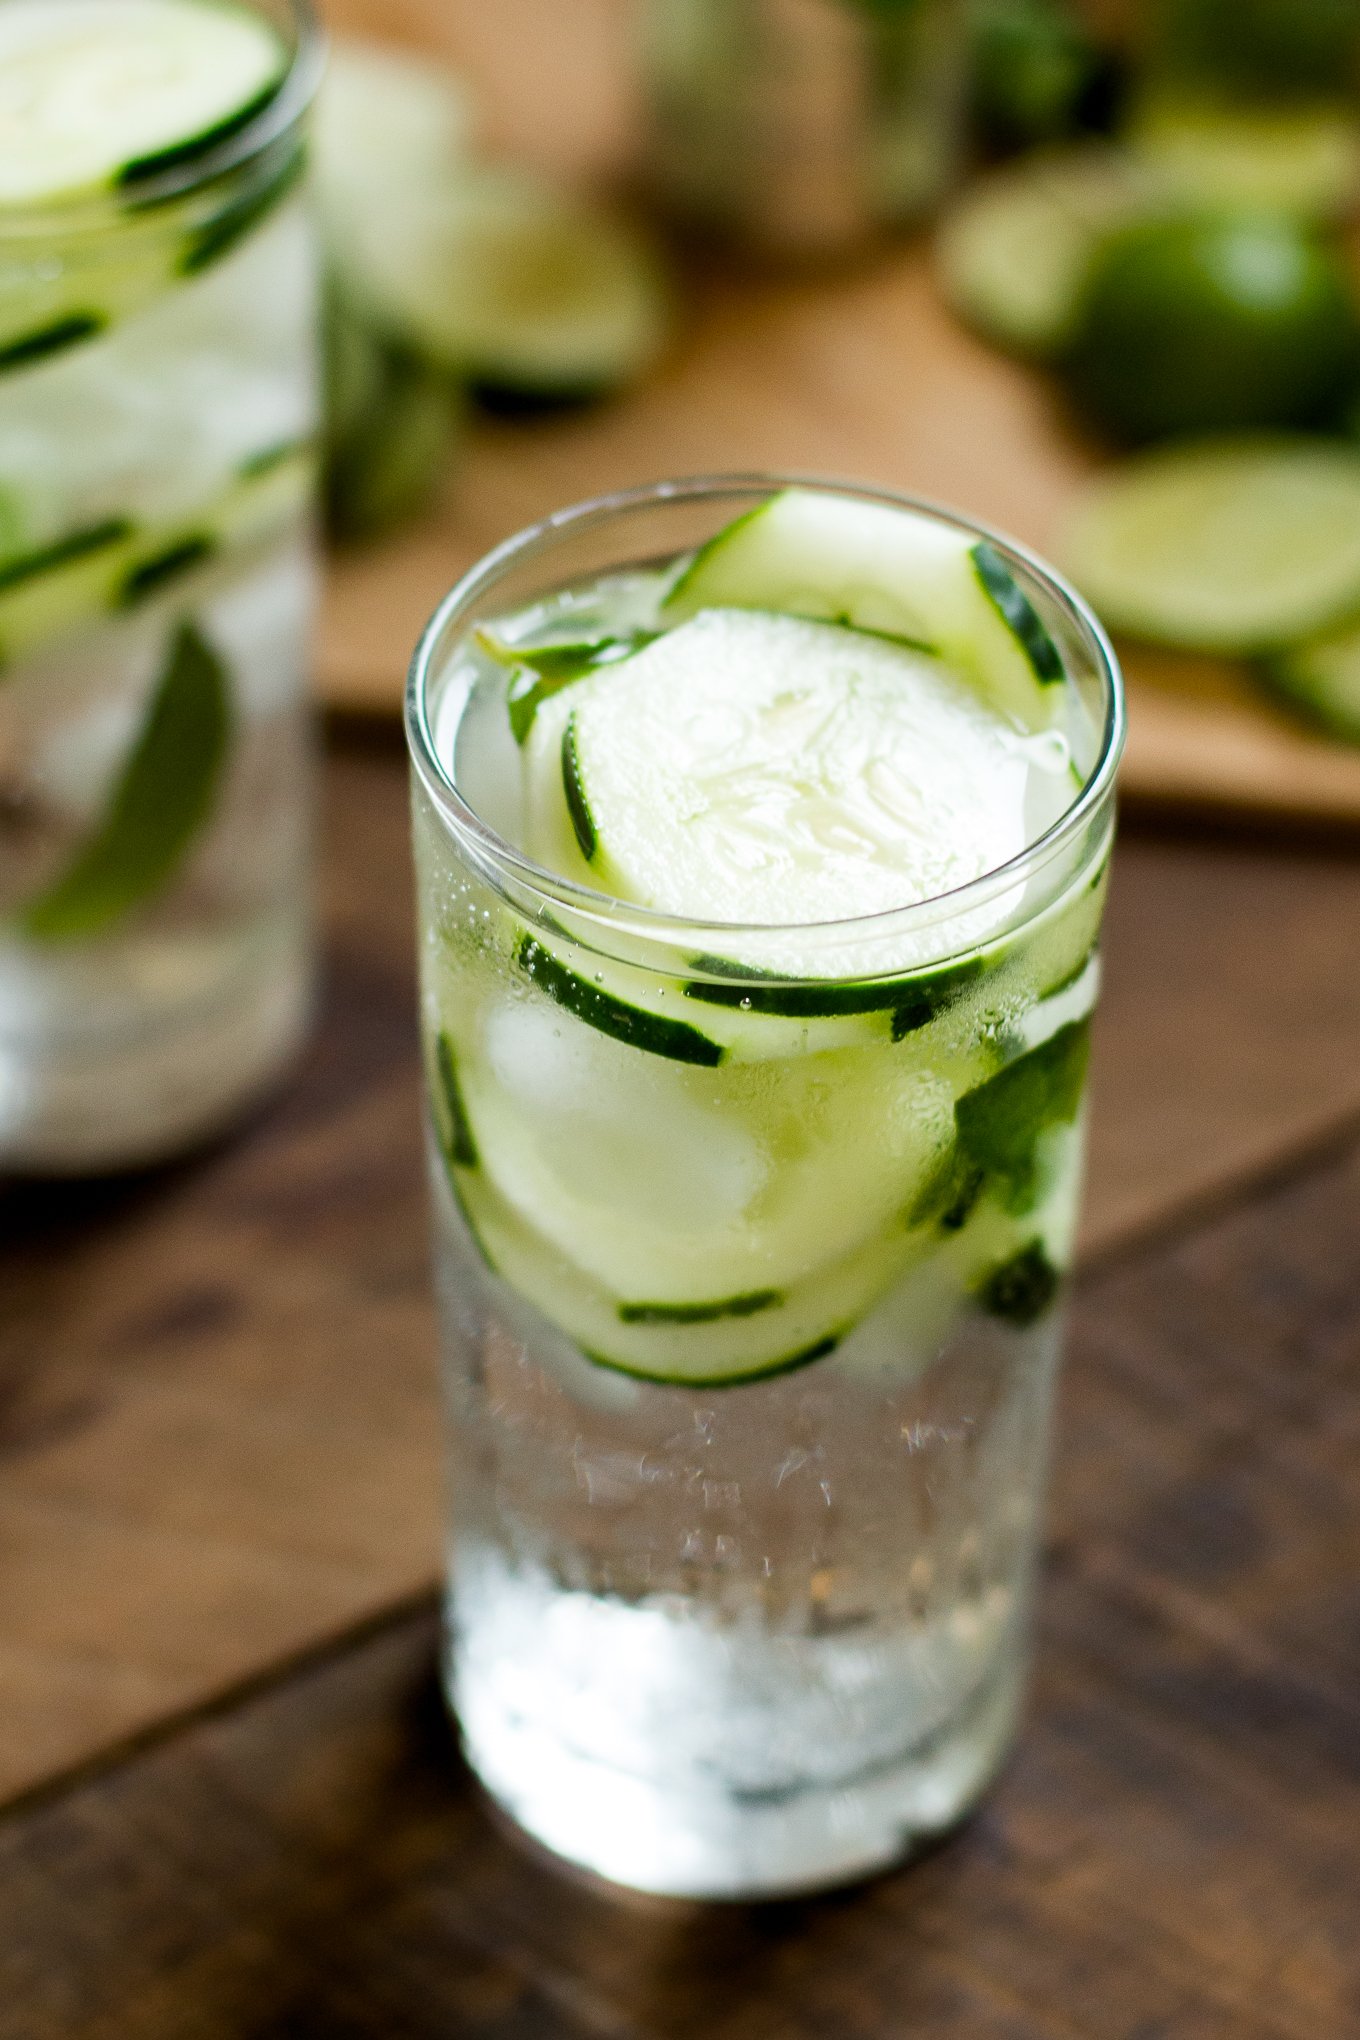 dasani sparkling, dasani sparkling water, cucumber mint water, cucumber water recipe, lifestyle blog